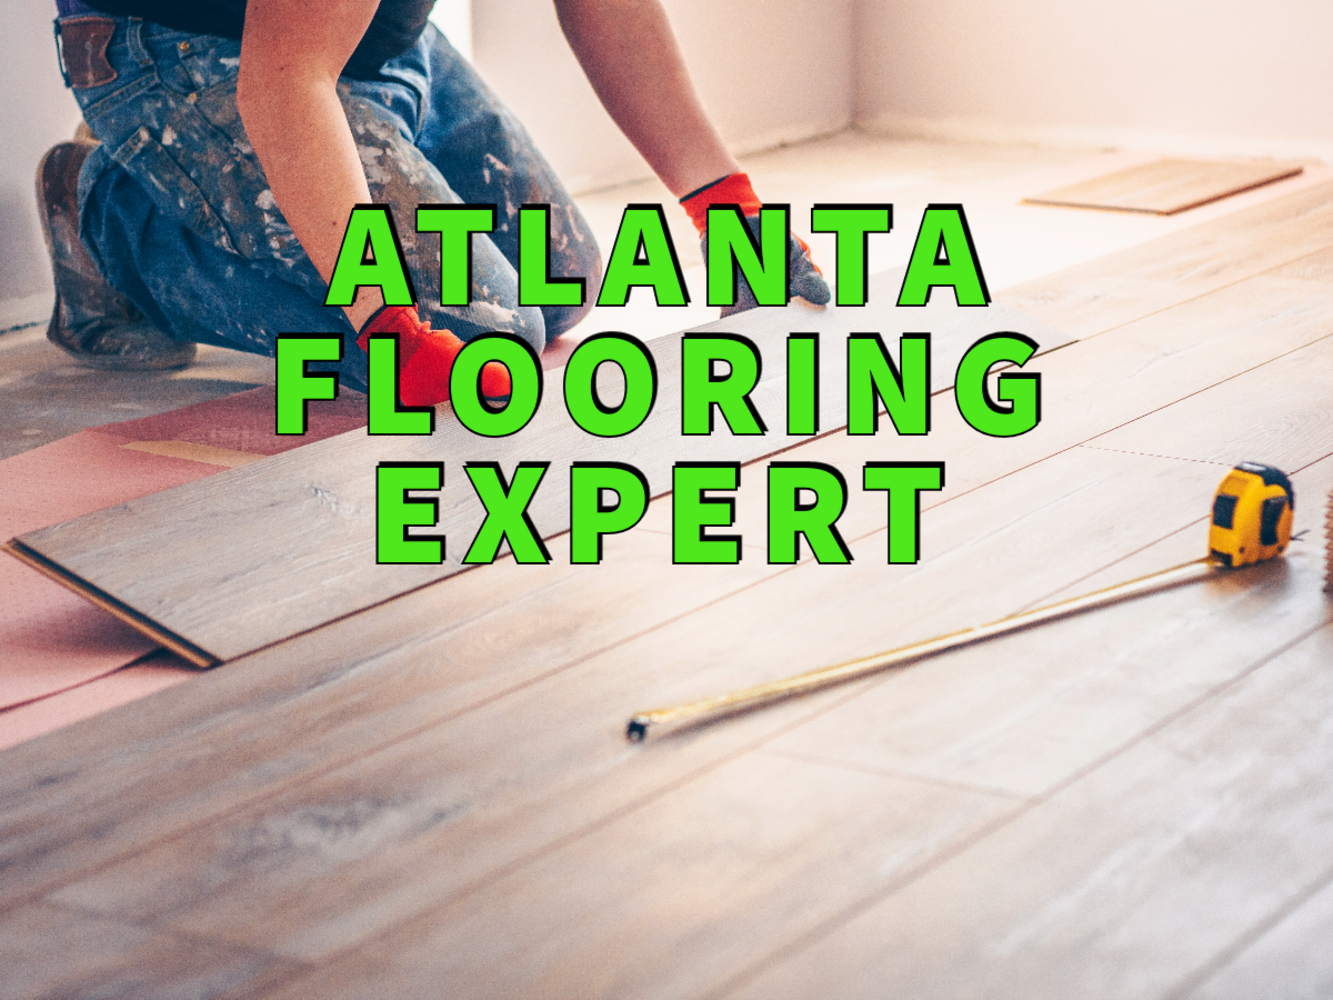 Atlanta flooring expert written in green over background image of worker installing hardwood floor